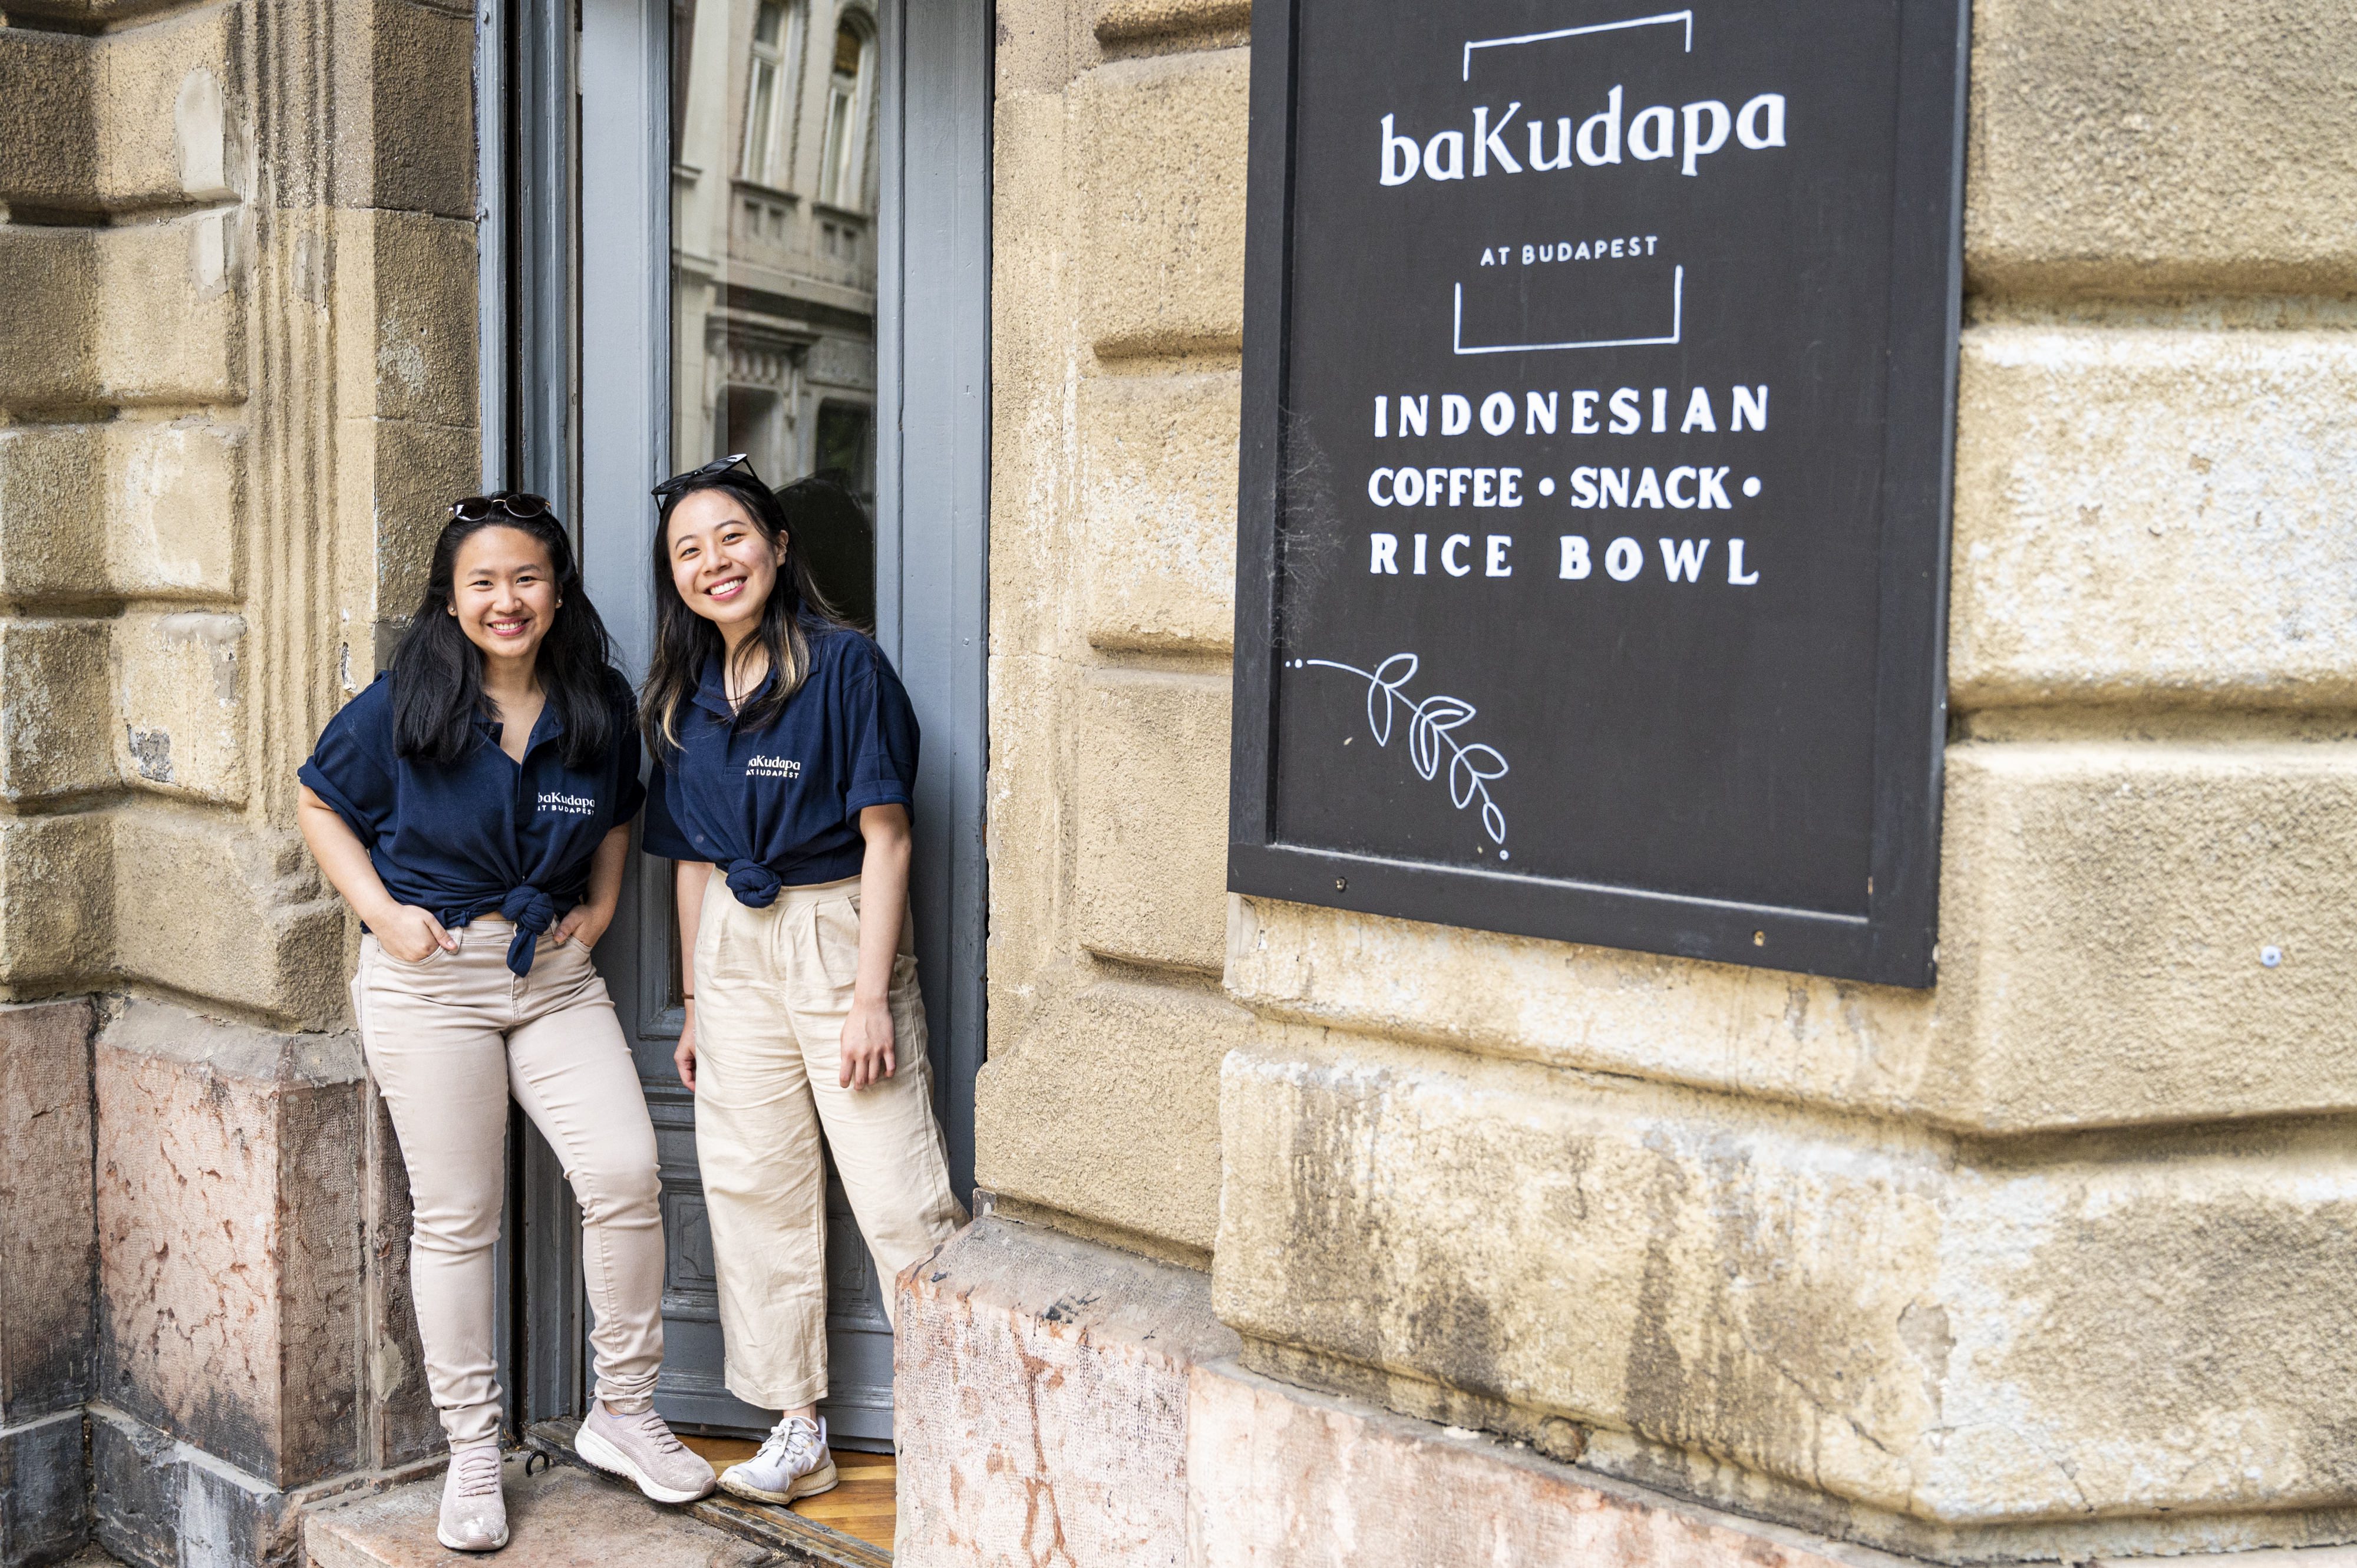 Találka egy bajigur és egy nasi uduk felett – Megnéztük a baKudapa indonéz kávézót